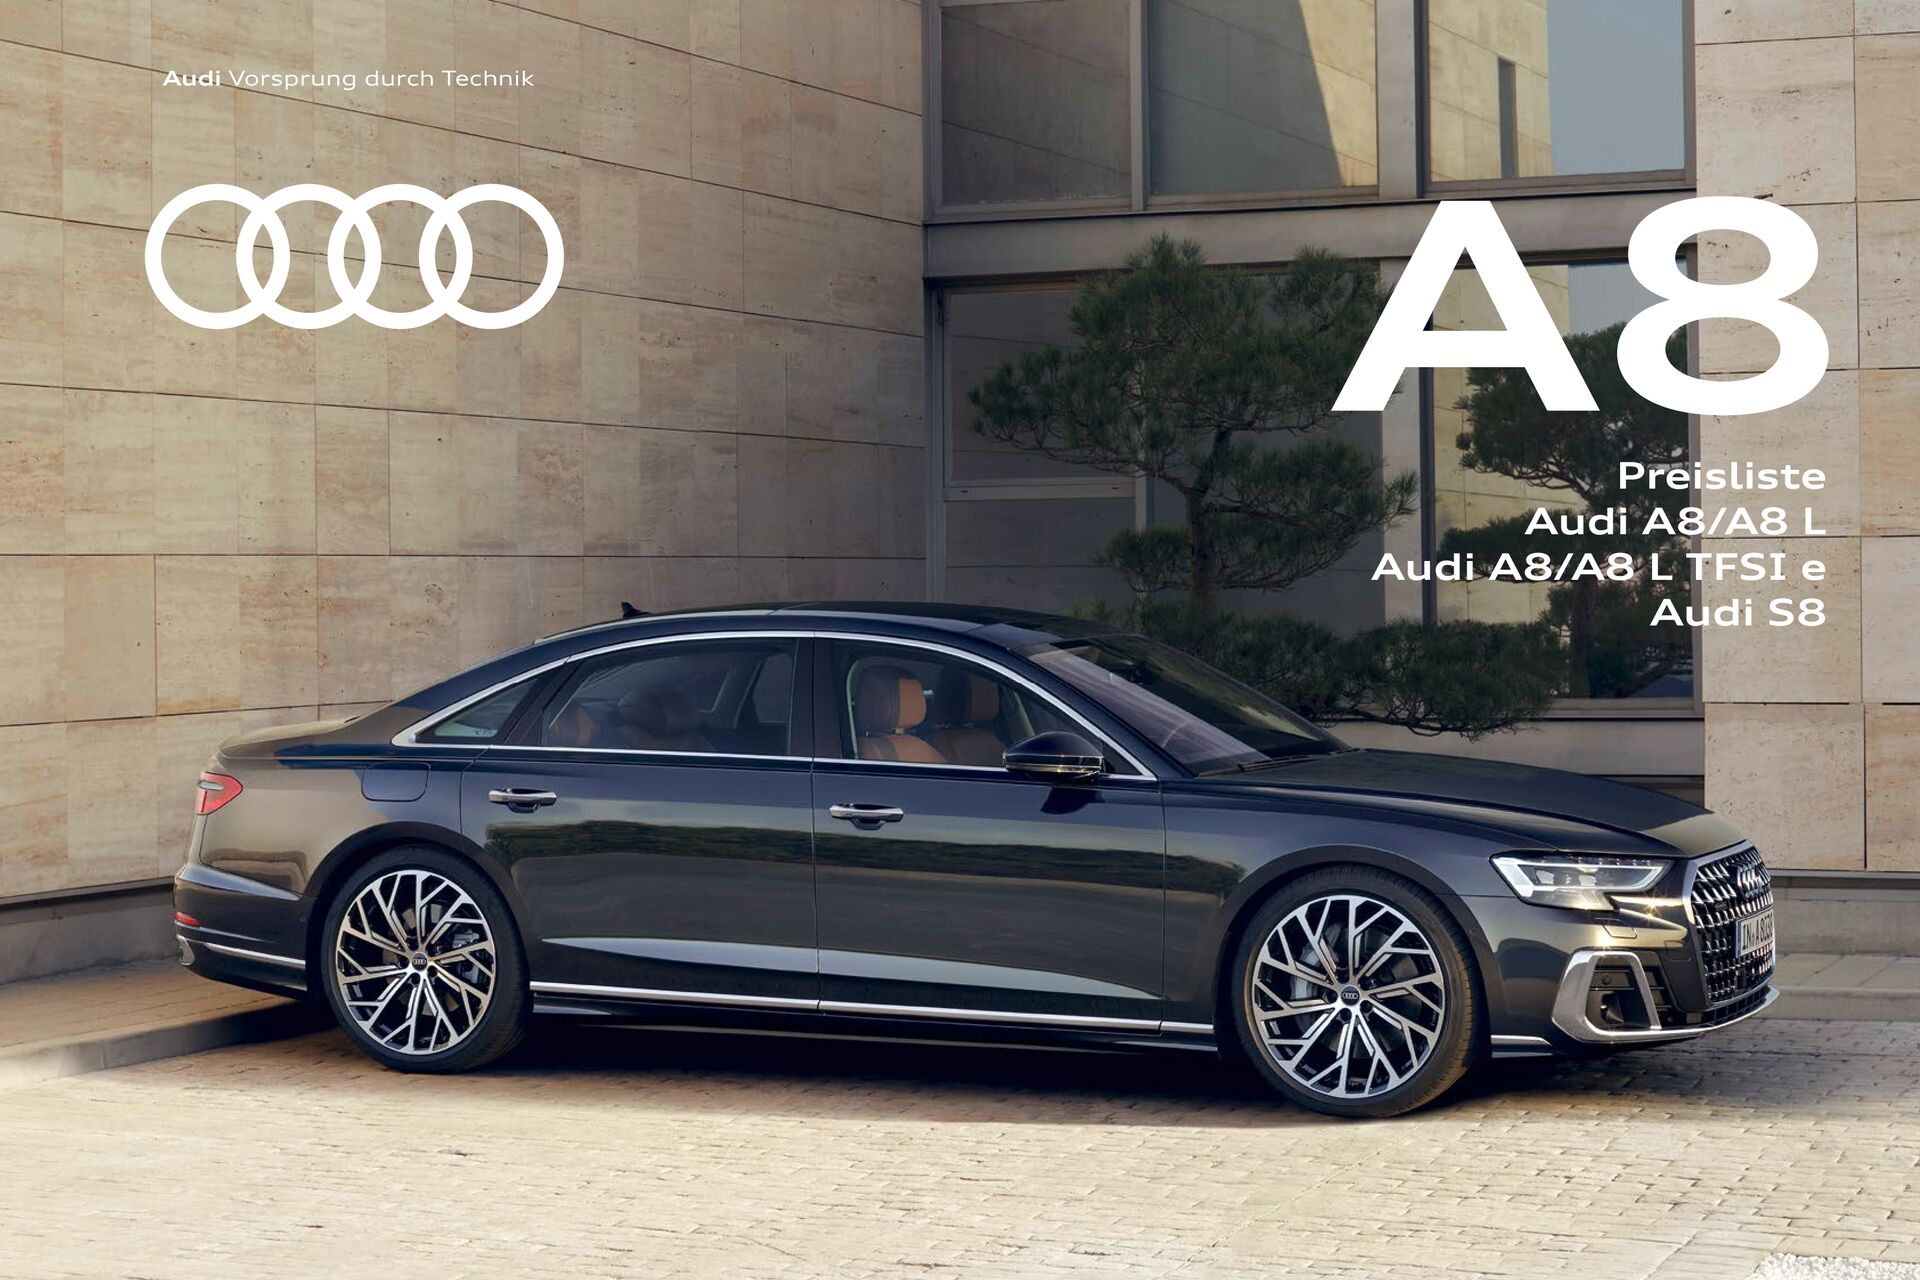 Preisliste Audi A8/A8 L / Audi A8/A8 L TFSI e / Audi S8 Modelljahr 2024